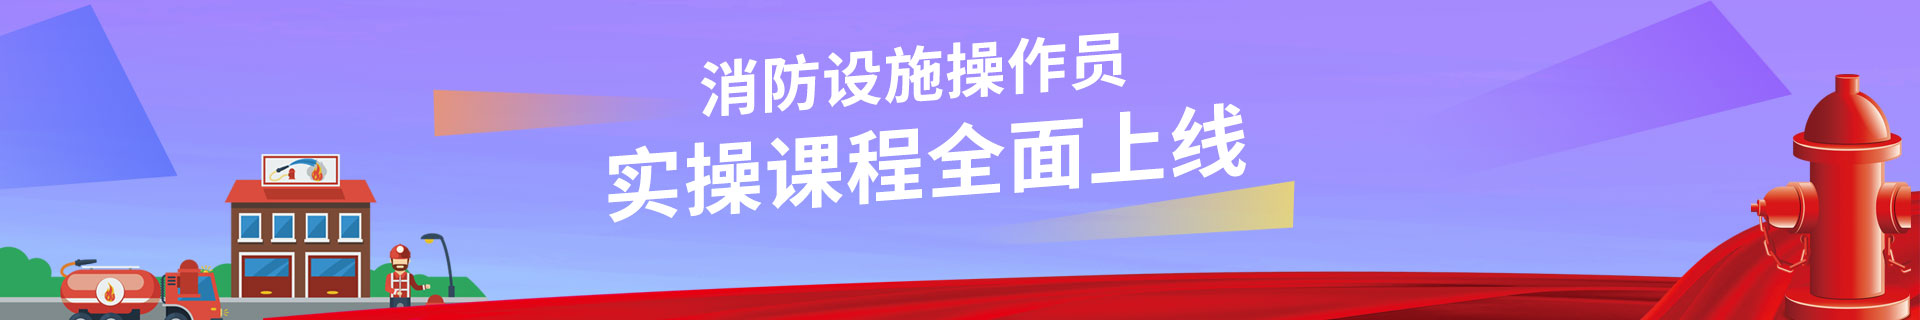 江苏徐州优路教育培训学校